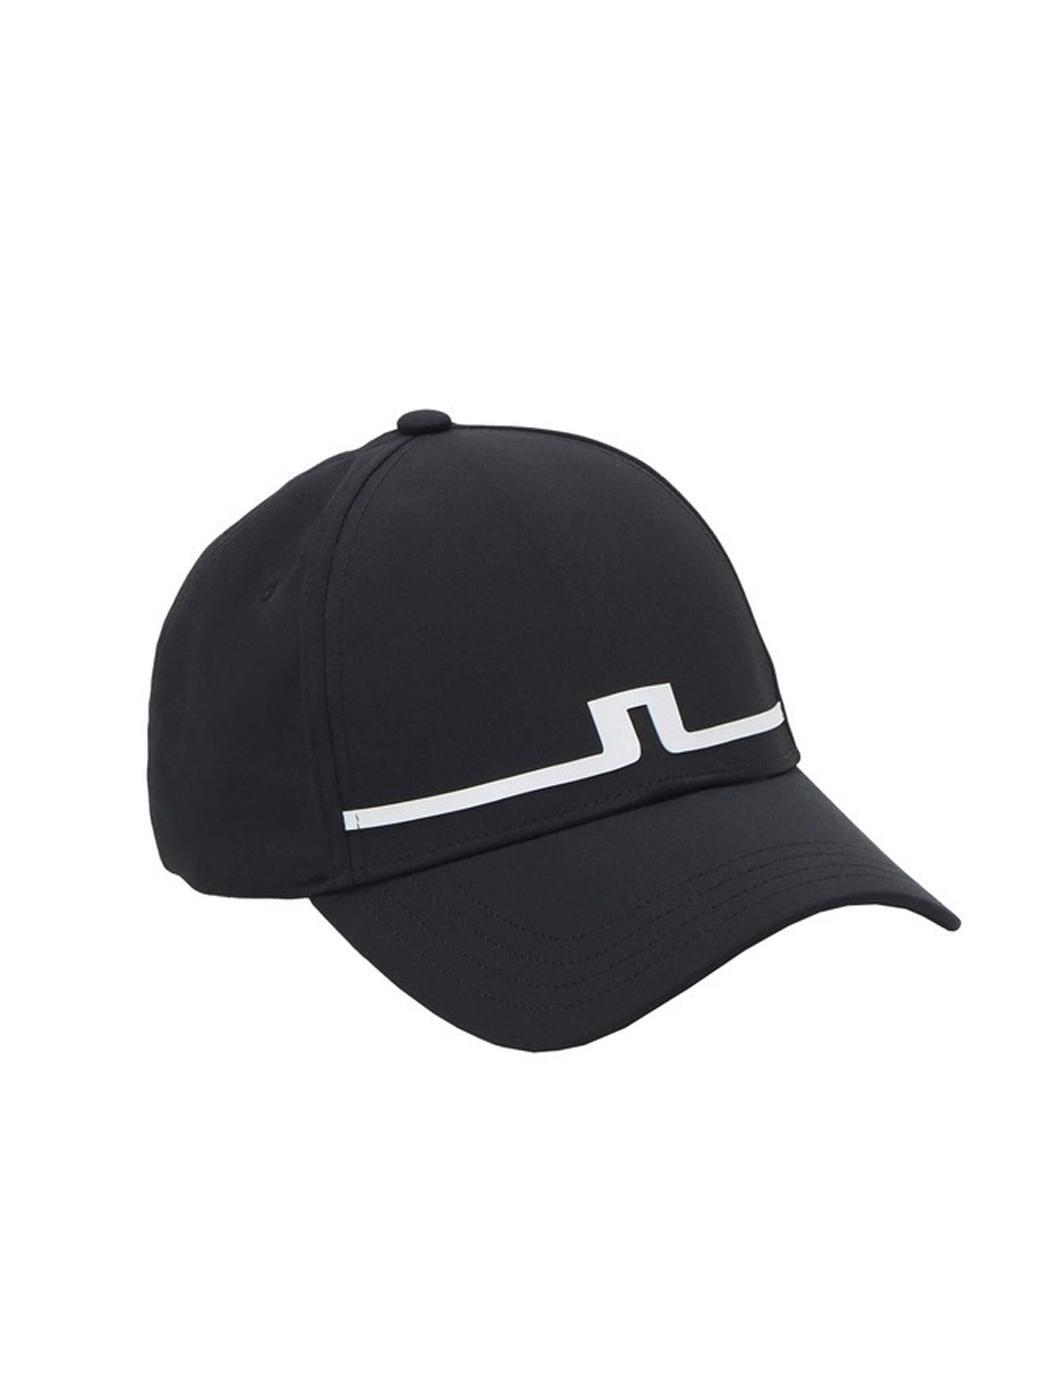 제이린드버그 SS 남성 골프 모자 오스카 OSCAR CAP 블랙